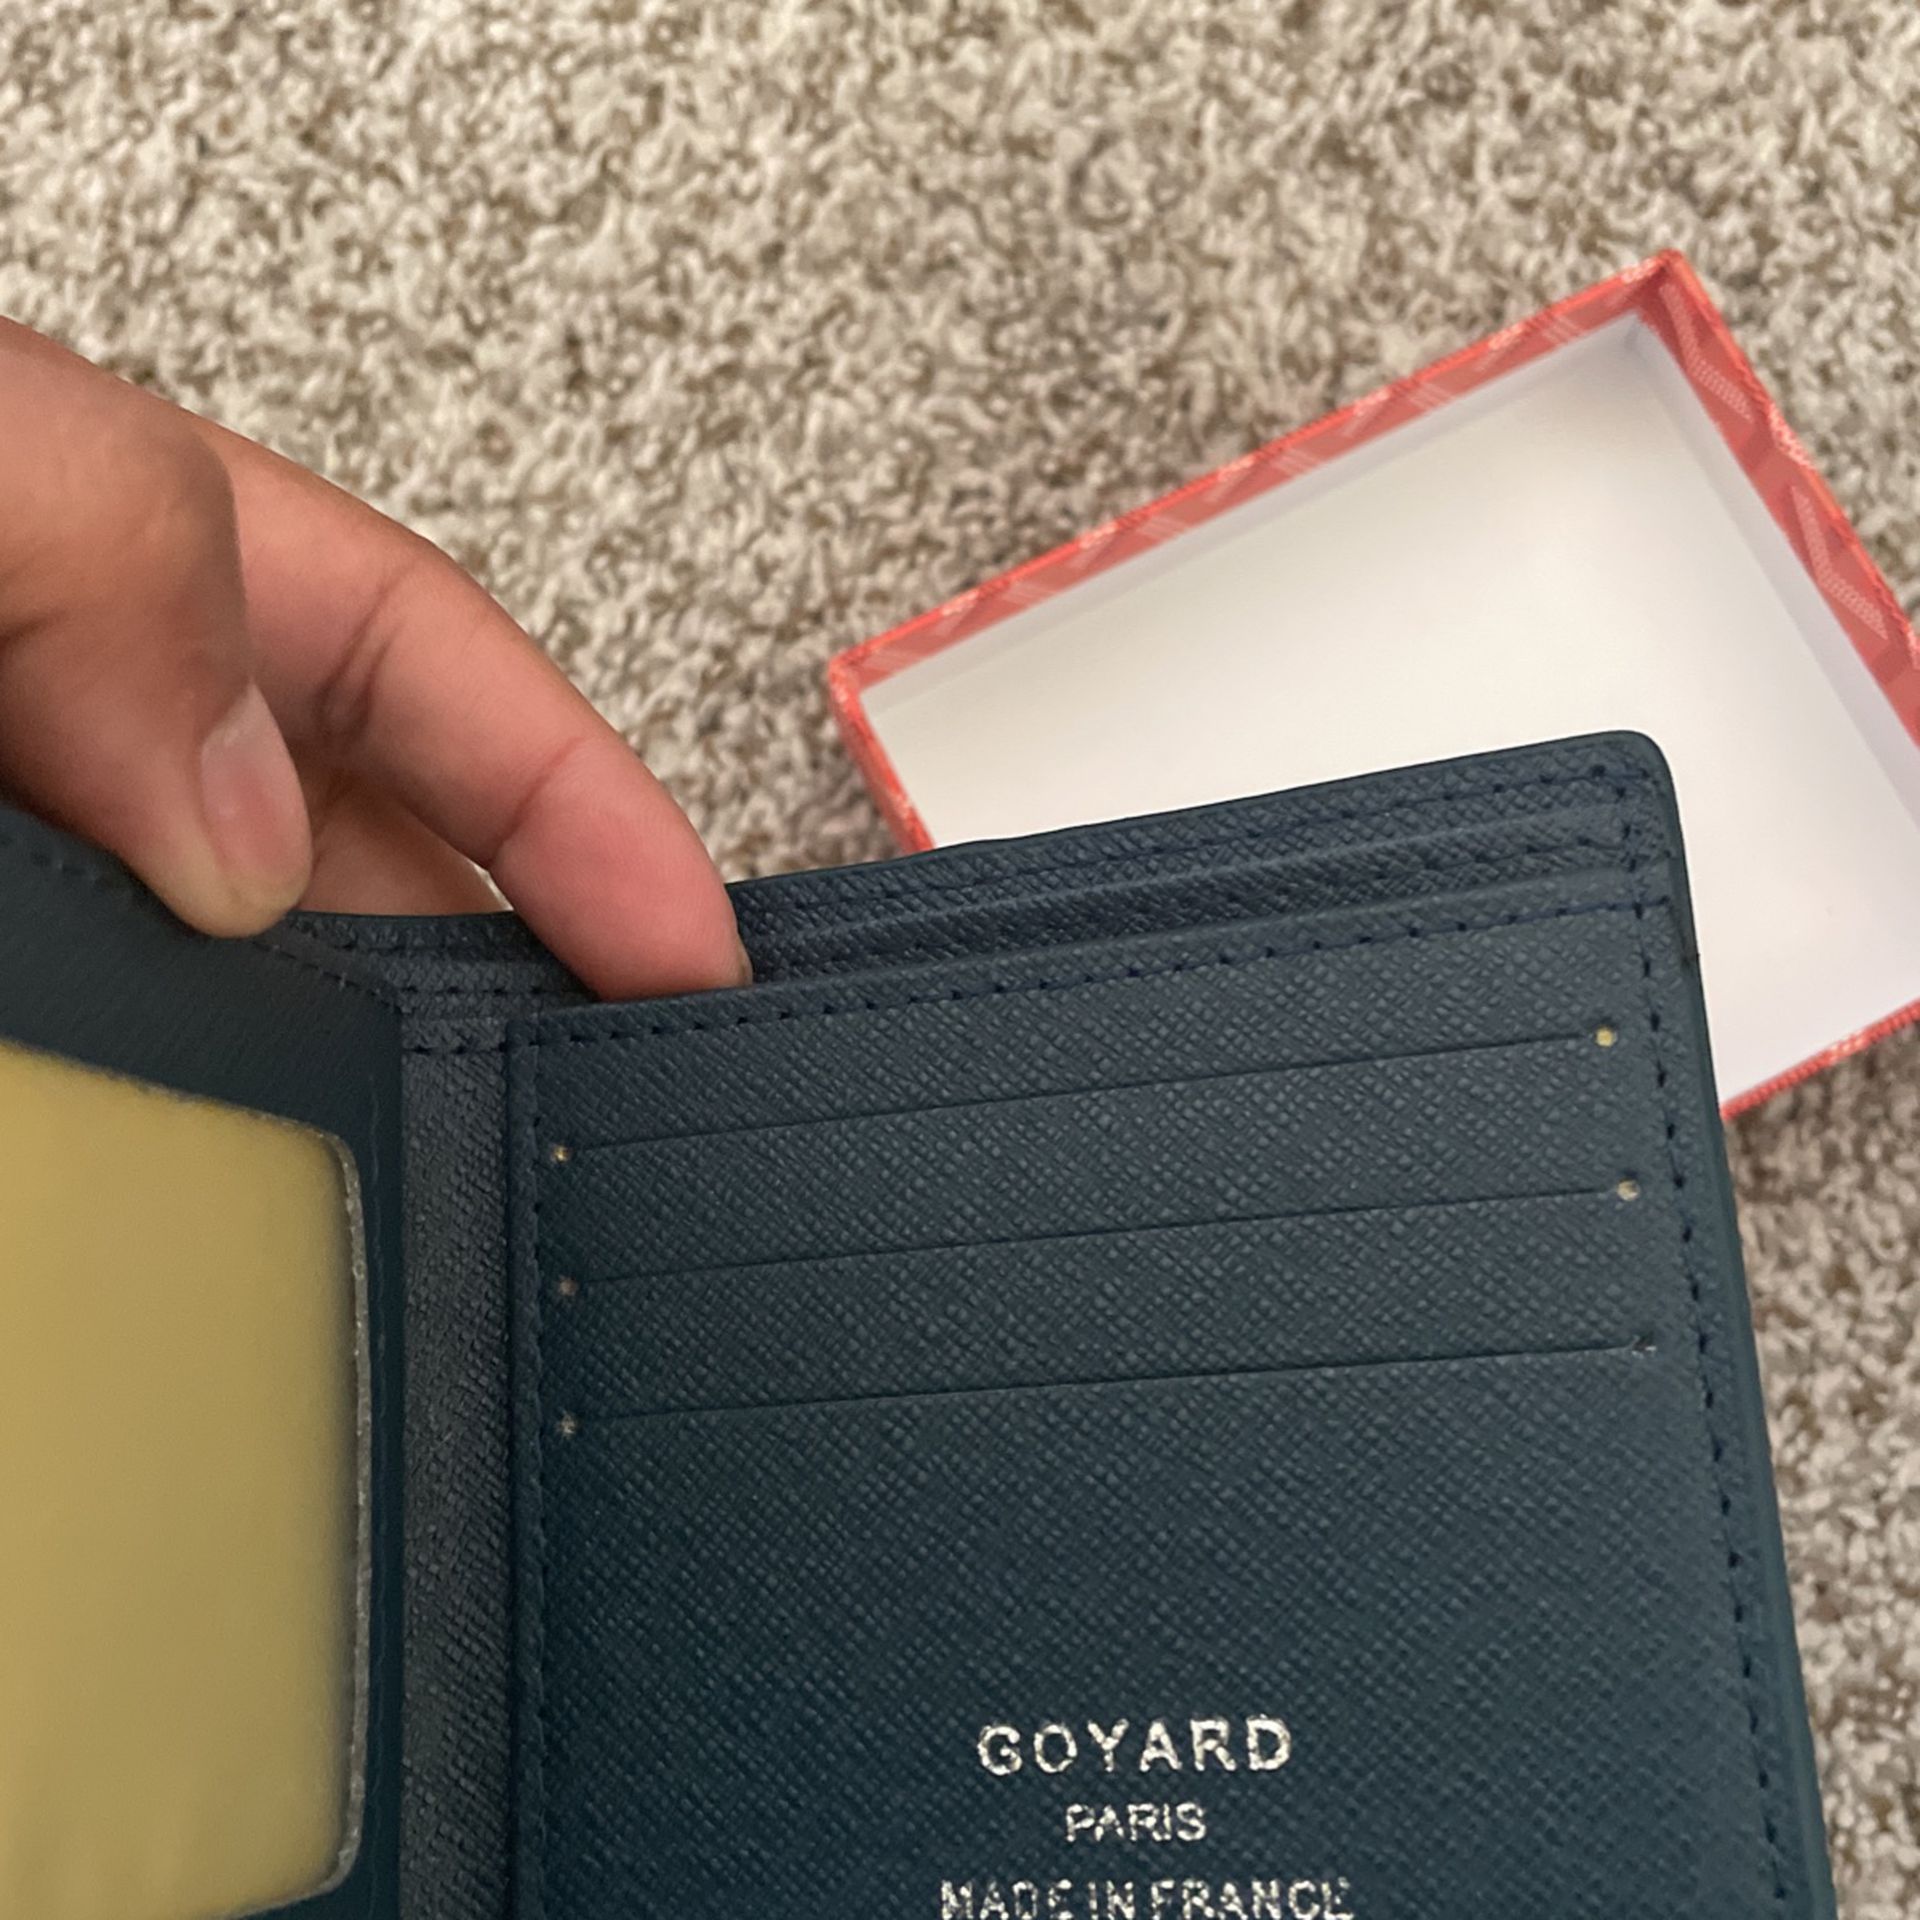 Light Blue Goyard Card Holder for Sale in Yorba Linda, CA - OfferUp